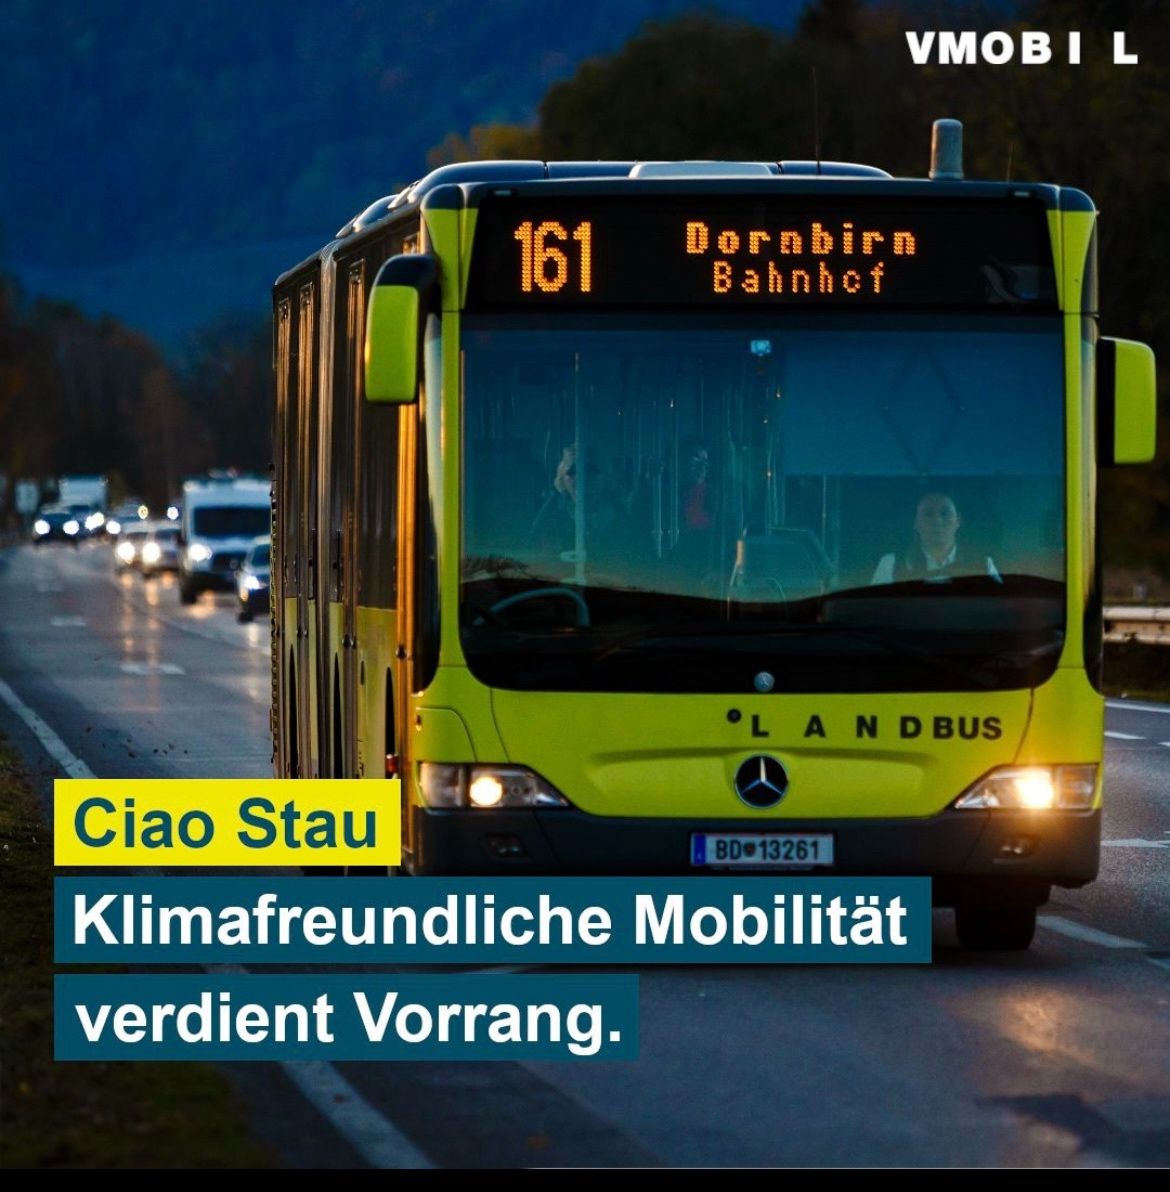 Vorarlbergs Busse sind wahre Kilometerfresser, mit über 19 Millionen Kilometern jährlich auf 180 Linien. Doch Verkehrshindernisse führen zu unvermeidbaren Verspätungen. Mehr im ORF-Artikel: lnkd.in/gRJvR8yx
#Vorarlberg #ÖffentlicherVerkehr #Nachhaltigkeit #Mobilität